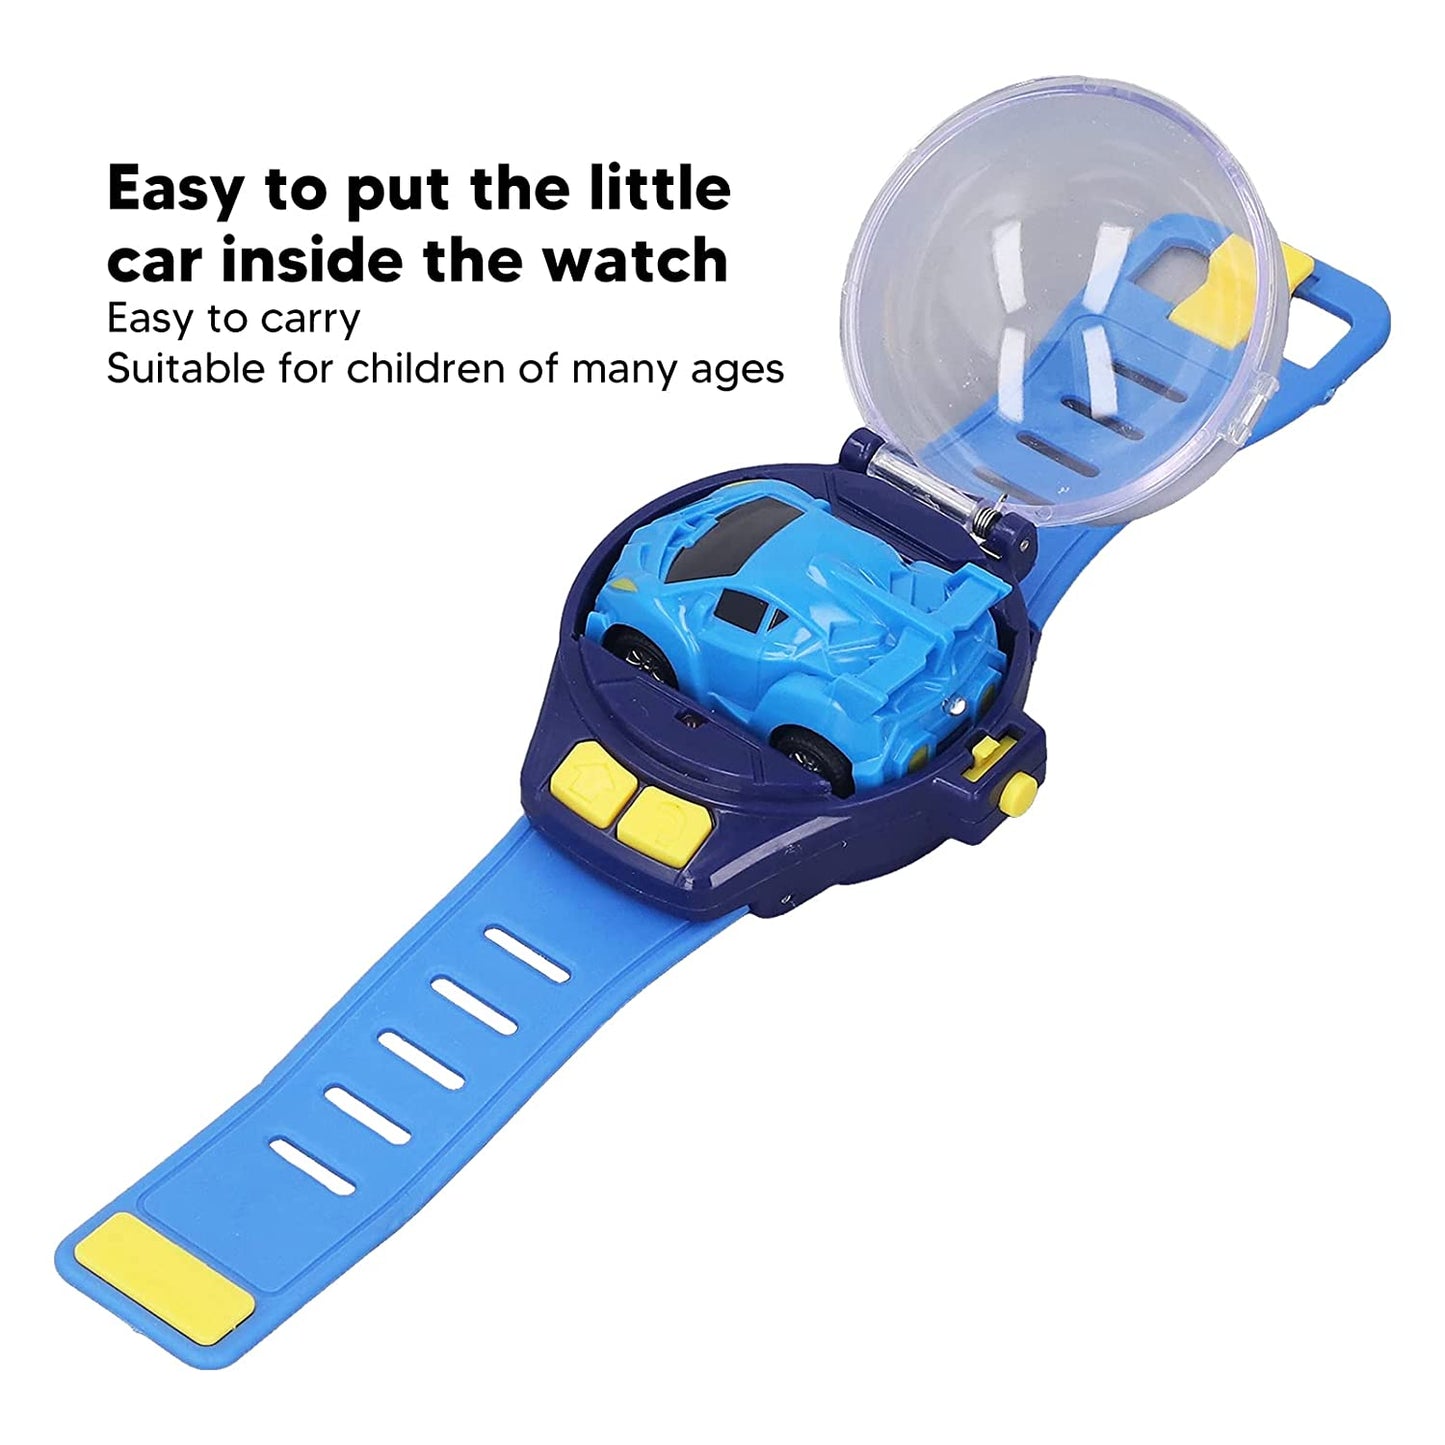 Car Watch Remote